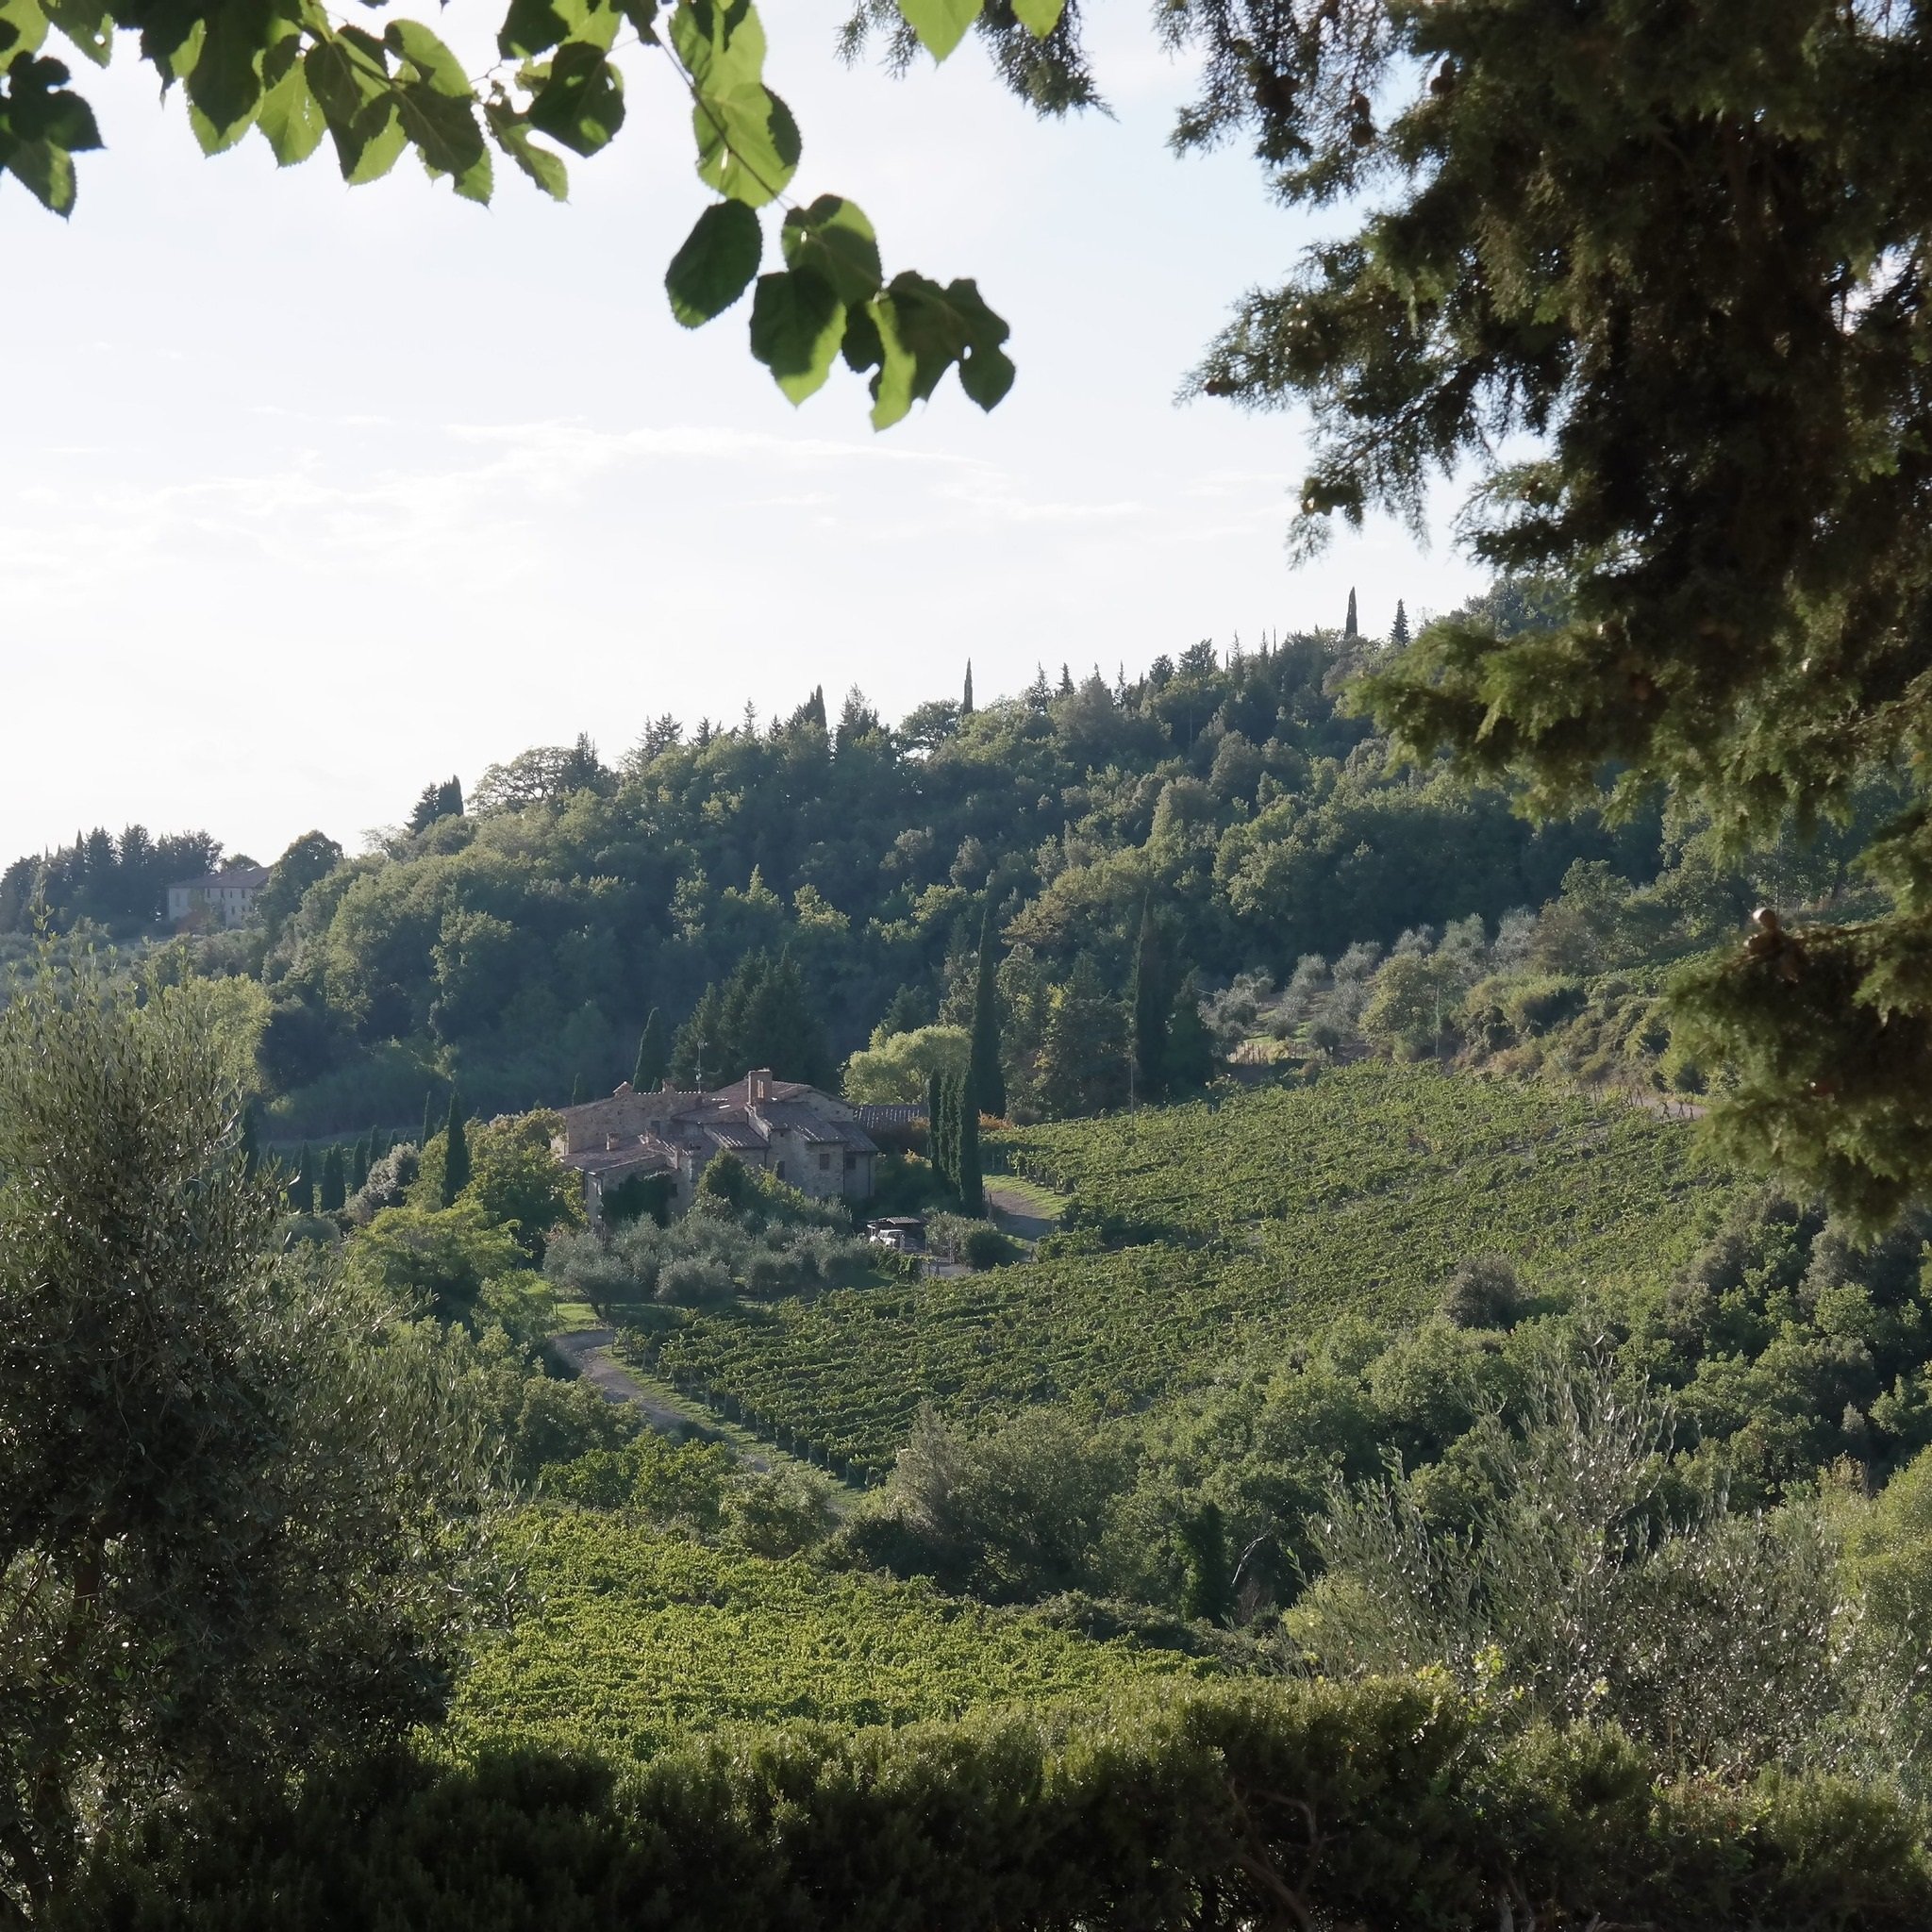 Tuscany_Chianti Classico_Castellare_landscape.jpg